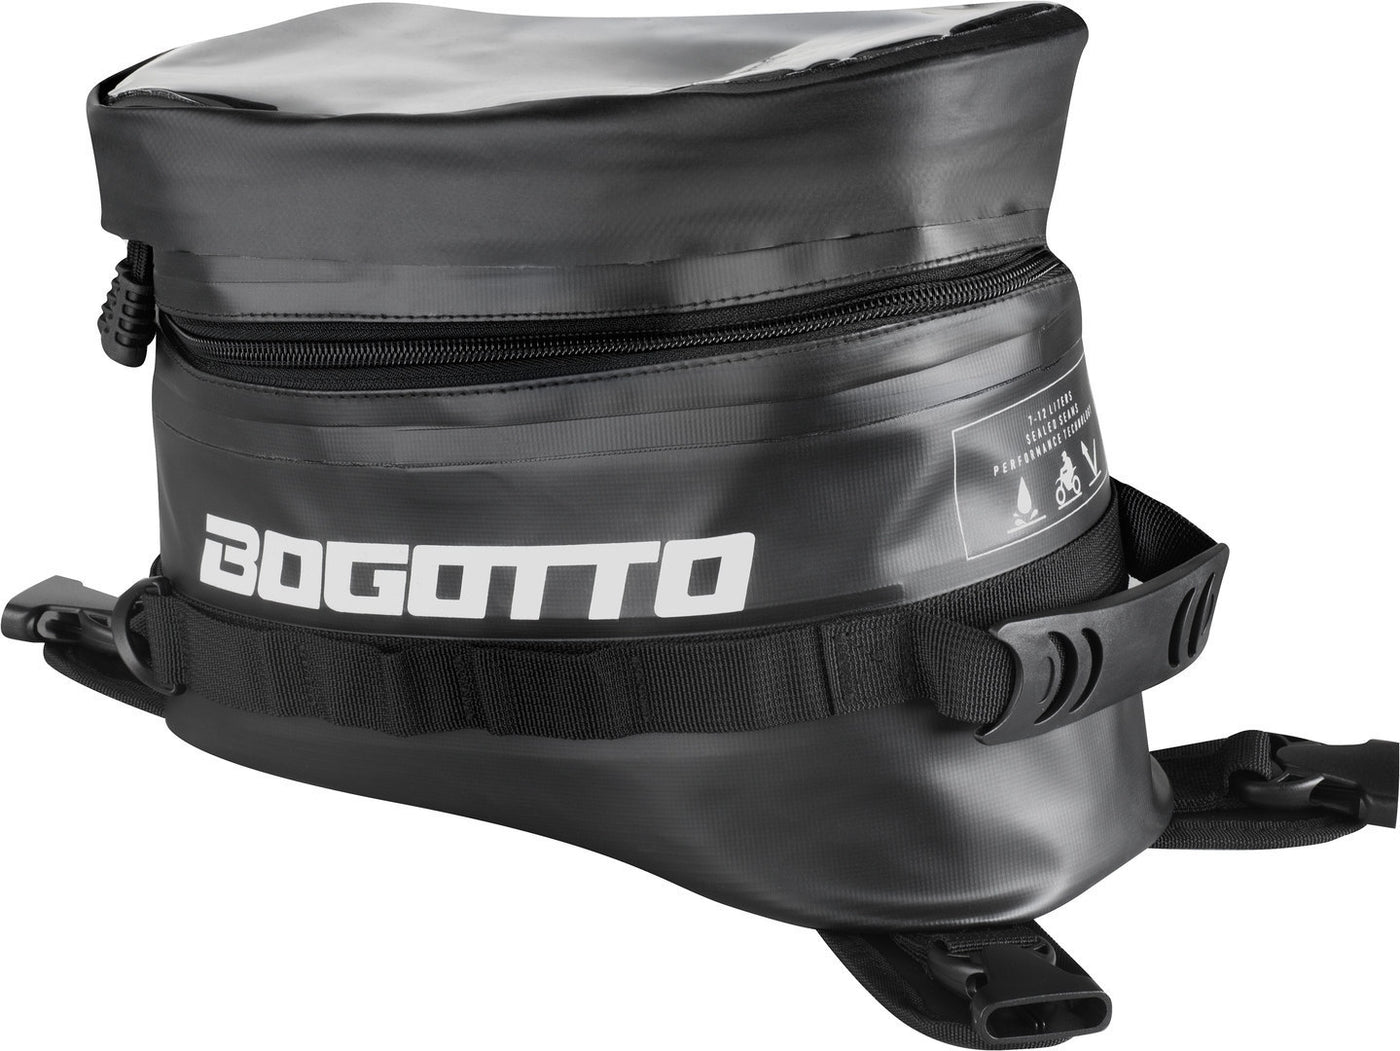 Bogotto Terreno waterproof Tank Bag#color_black